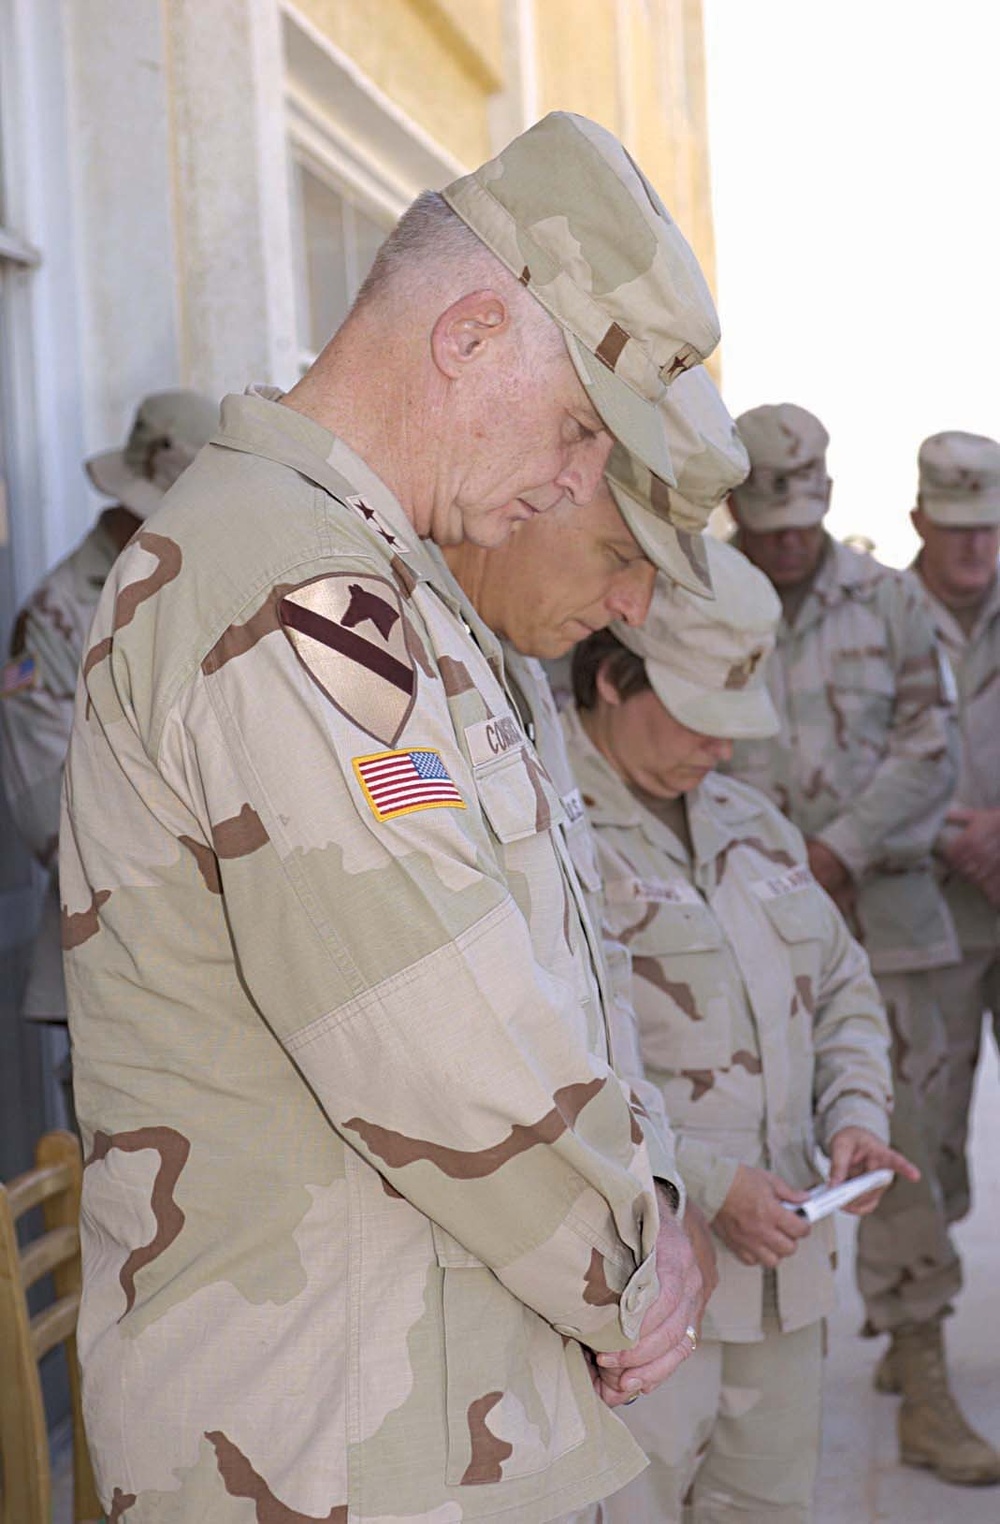 Sept. 11th Memorial service at Mubarak Military City